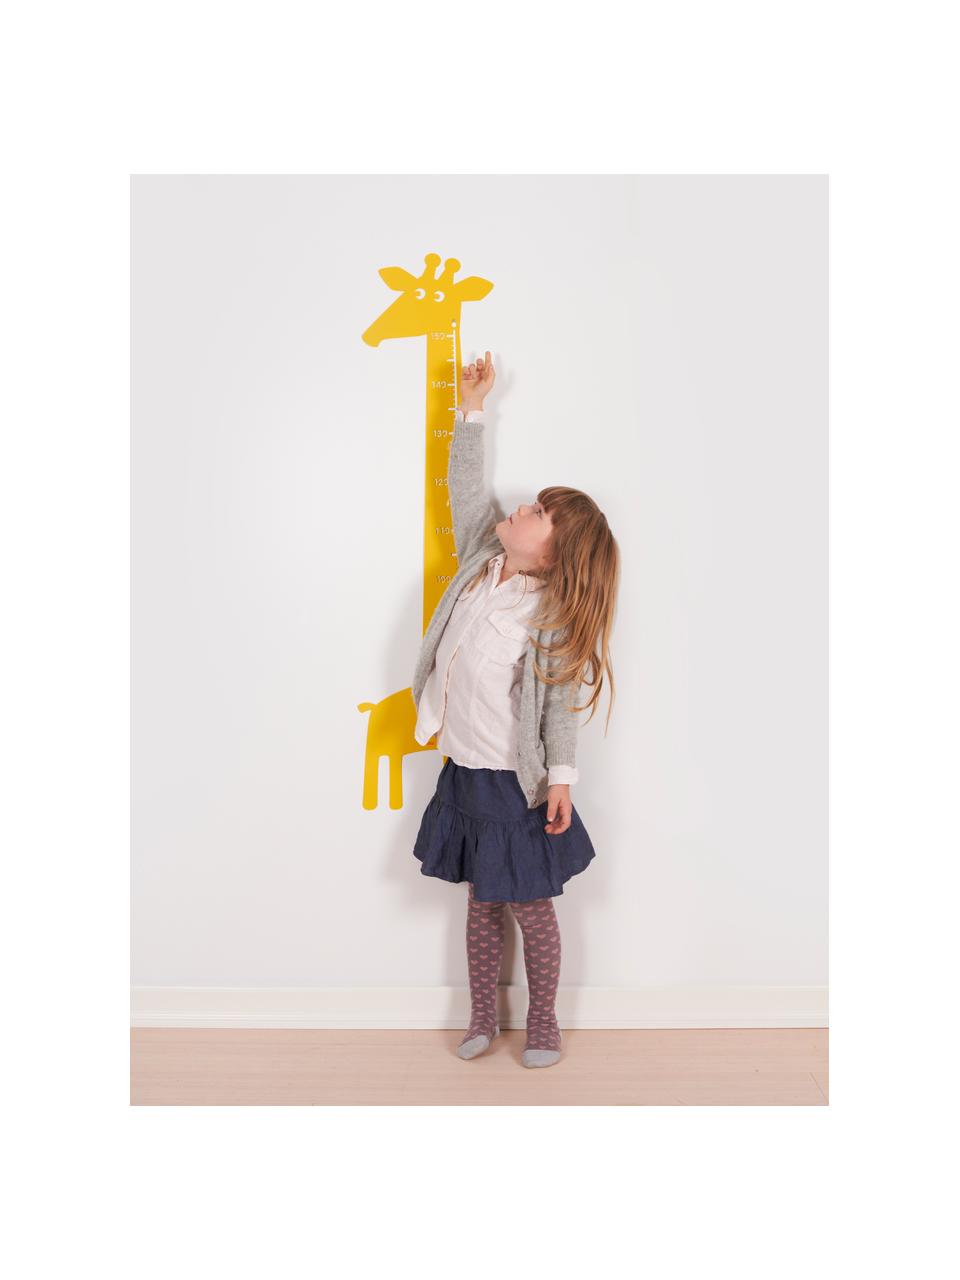 Messlatte Giraffe, Metall, pulverbeschichtet, Gelb, B 28 x H 115 cm